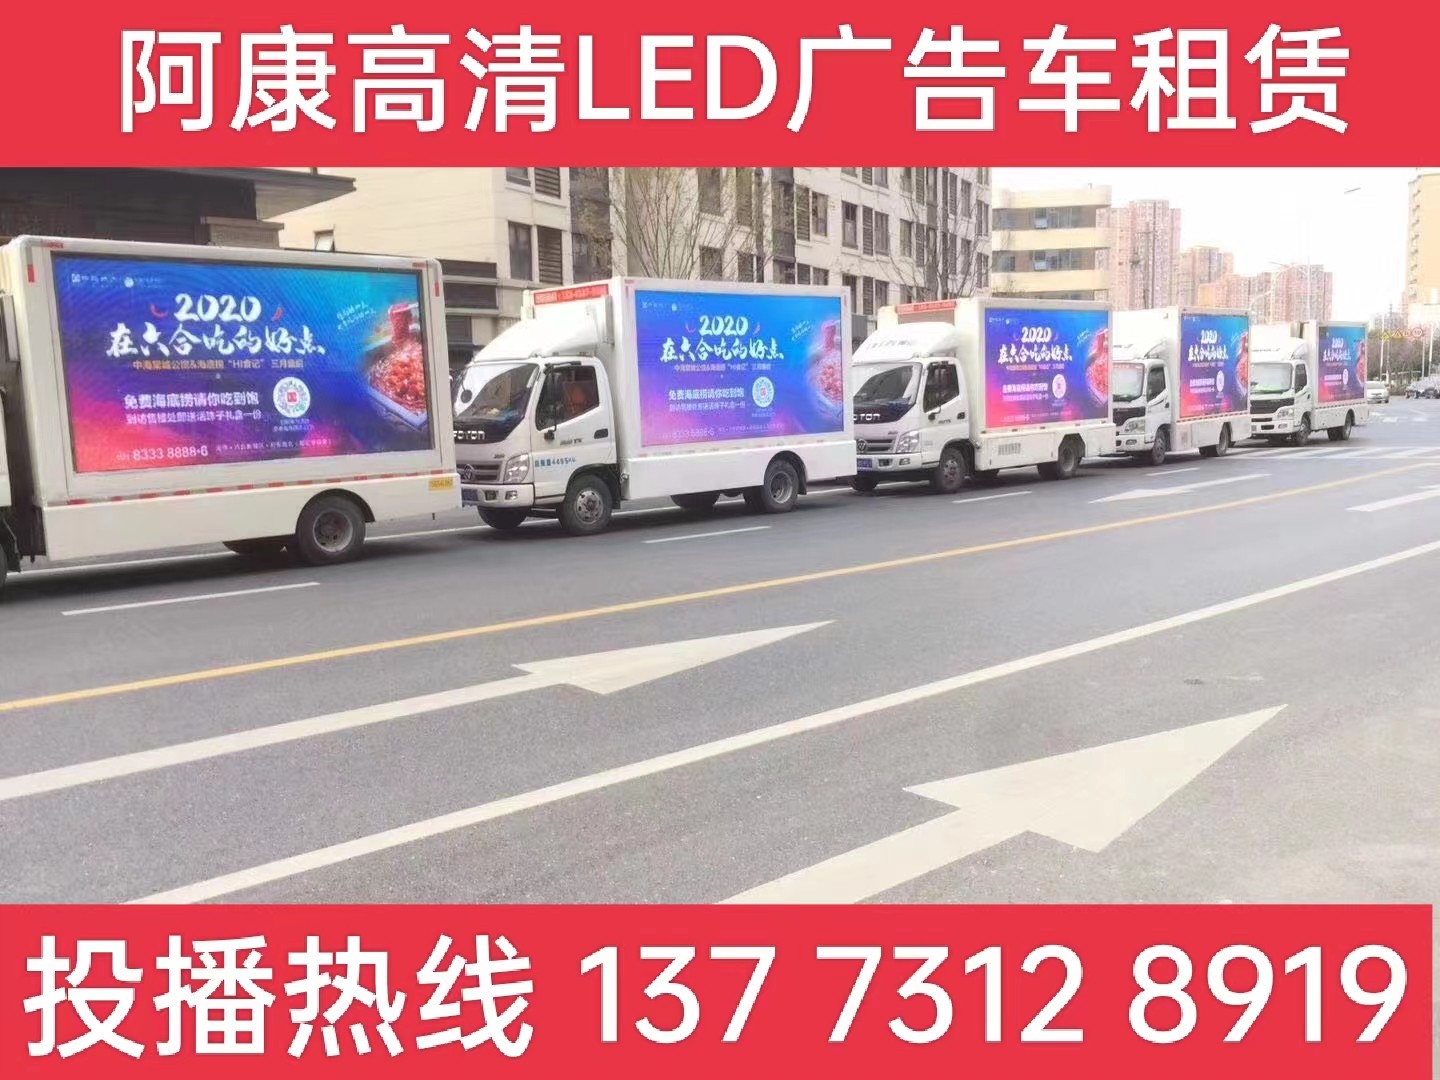 溧水区宣传车出租-海底捞LED广告